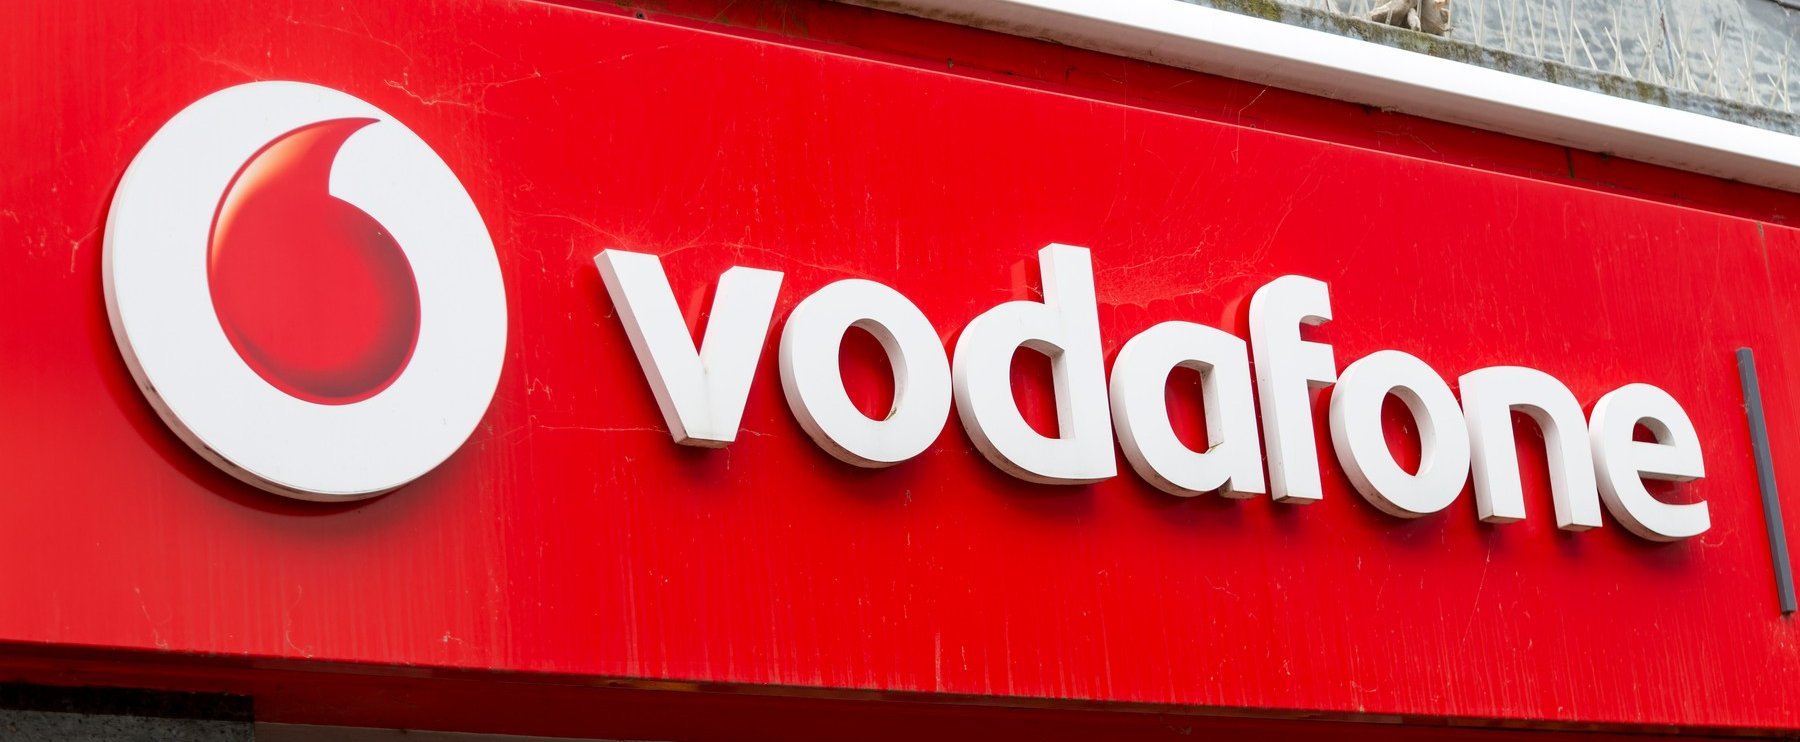 Régóta várt hírt kaptak a Vodafone-osok, egyik szolgáltató sem vezette be ezt eddig